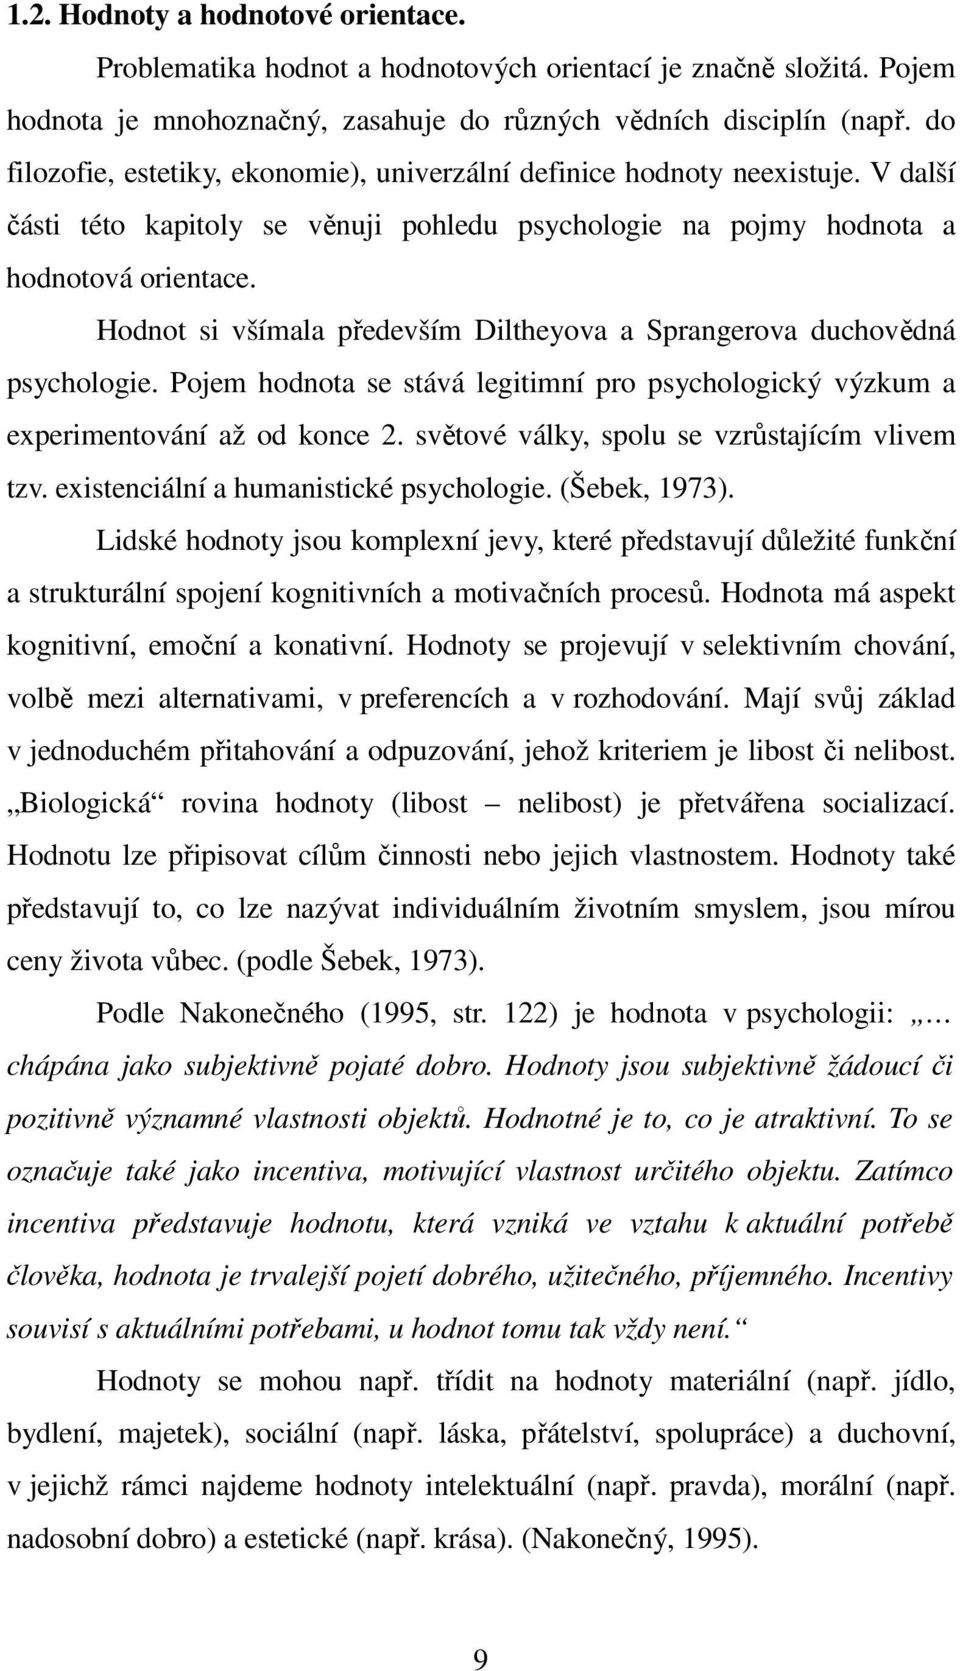 Hodnot si všímala především Diltheyova a Sprangerova duchovědná psychologie. Pojem hodnota se stává legitimní pro psychologický výzkum a experimentování až od konce 2.